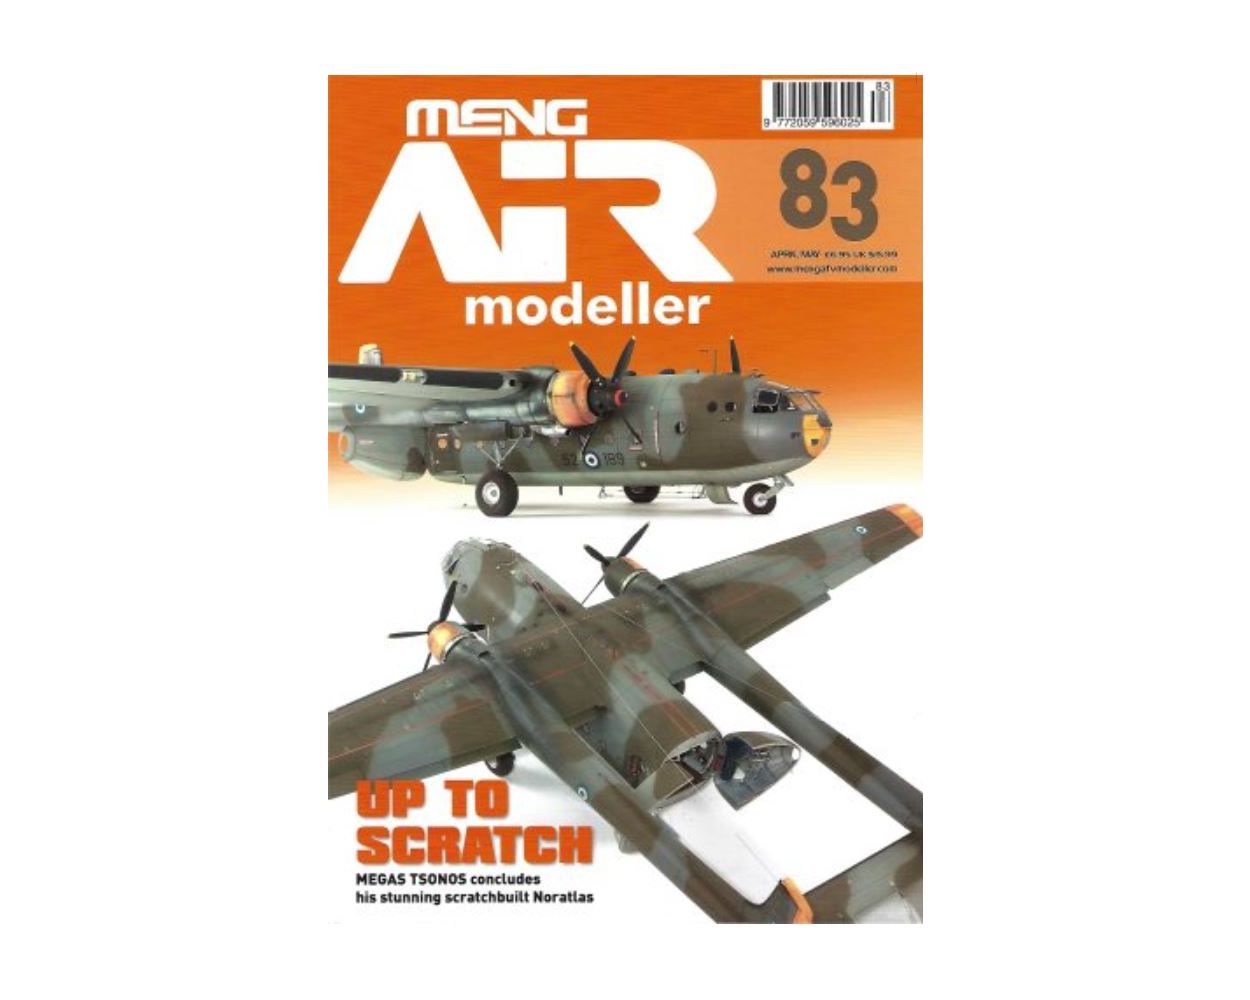 Meng AIR Modeller - Issue 21 - AFV modeller